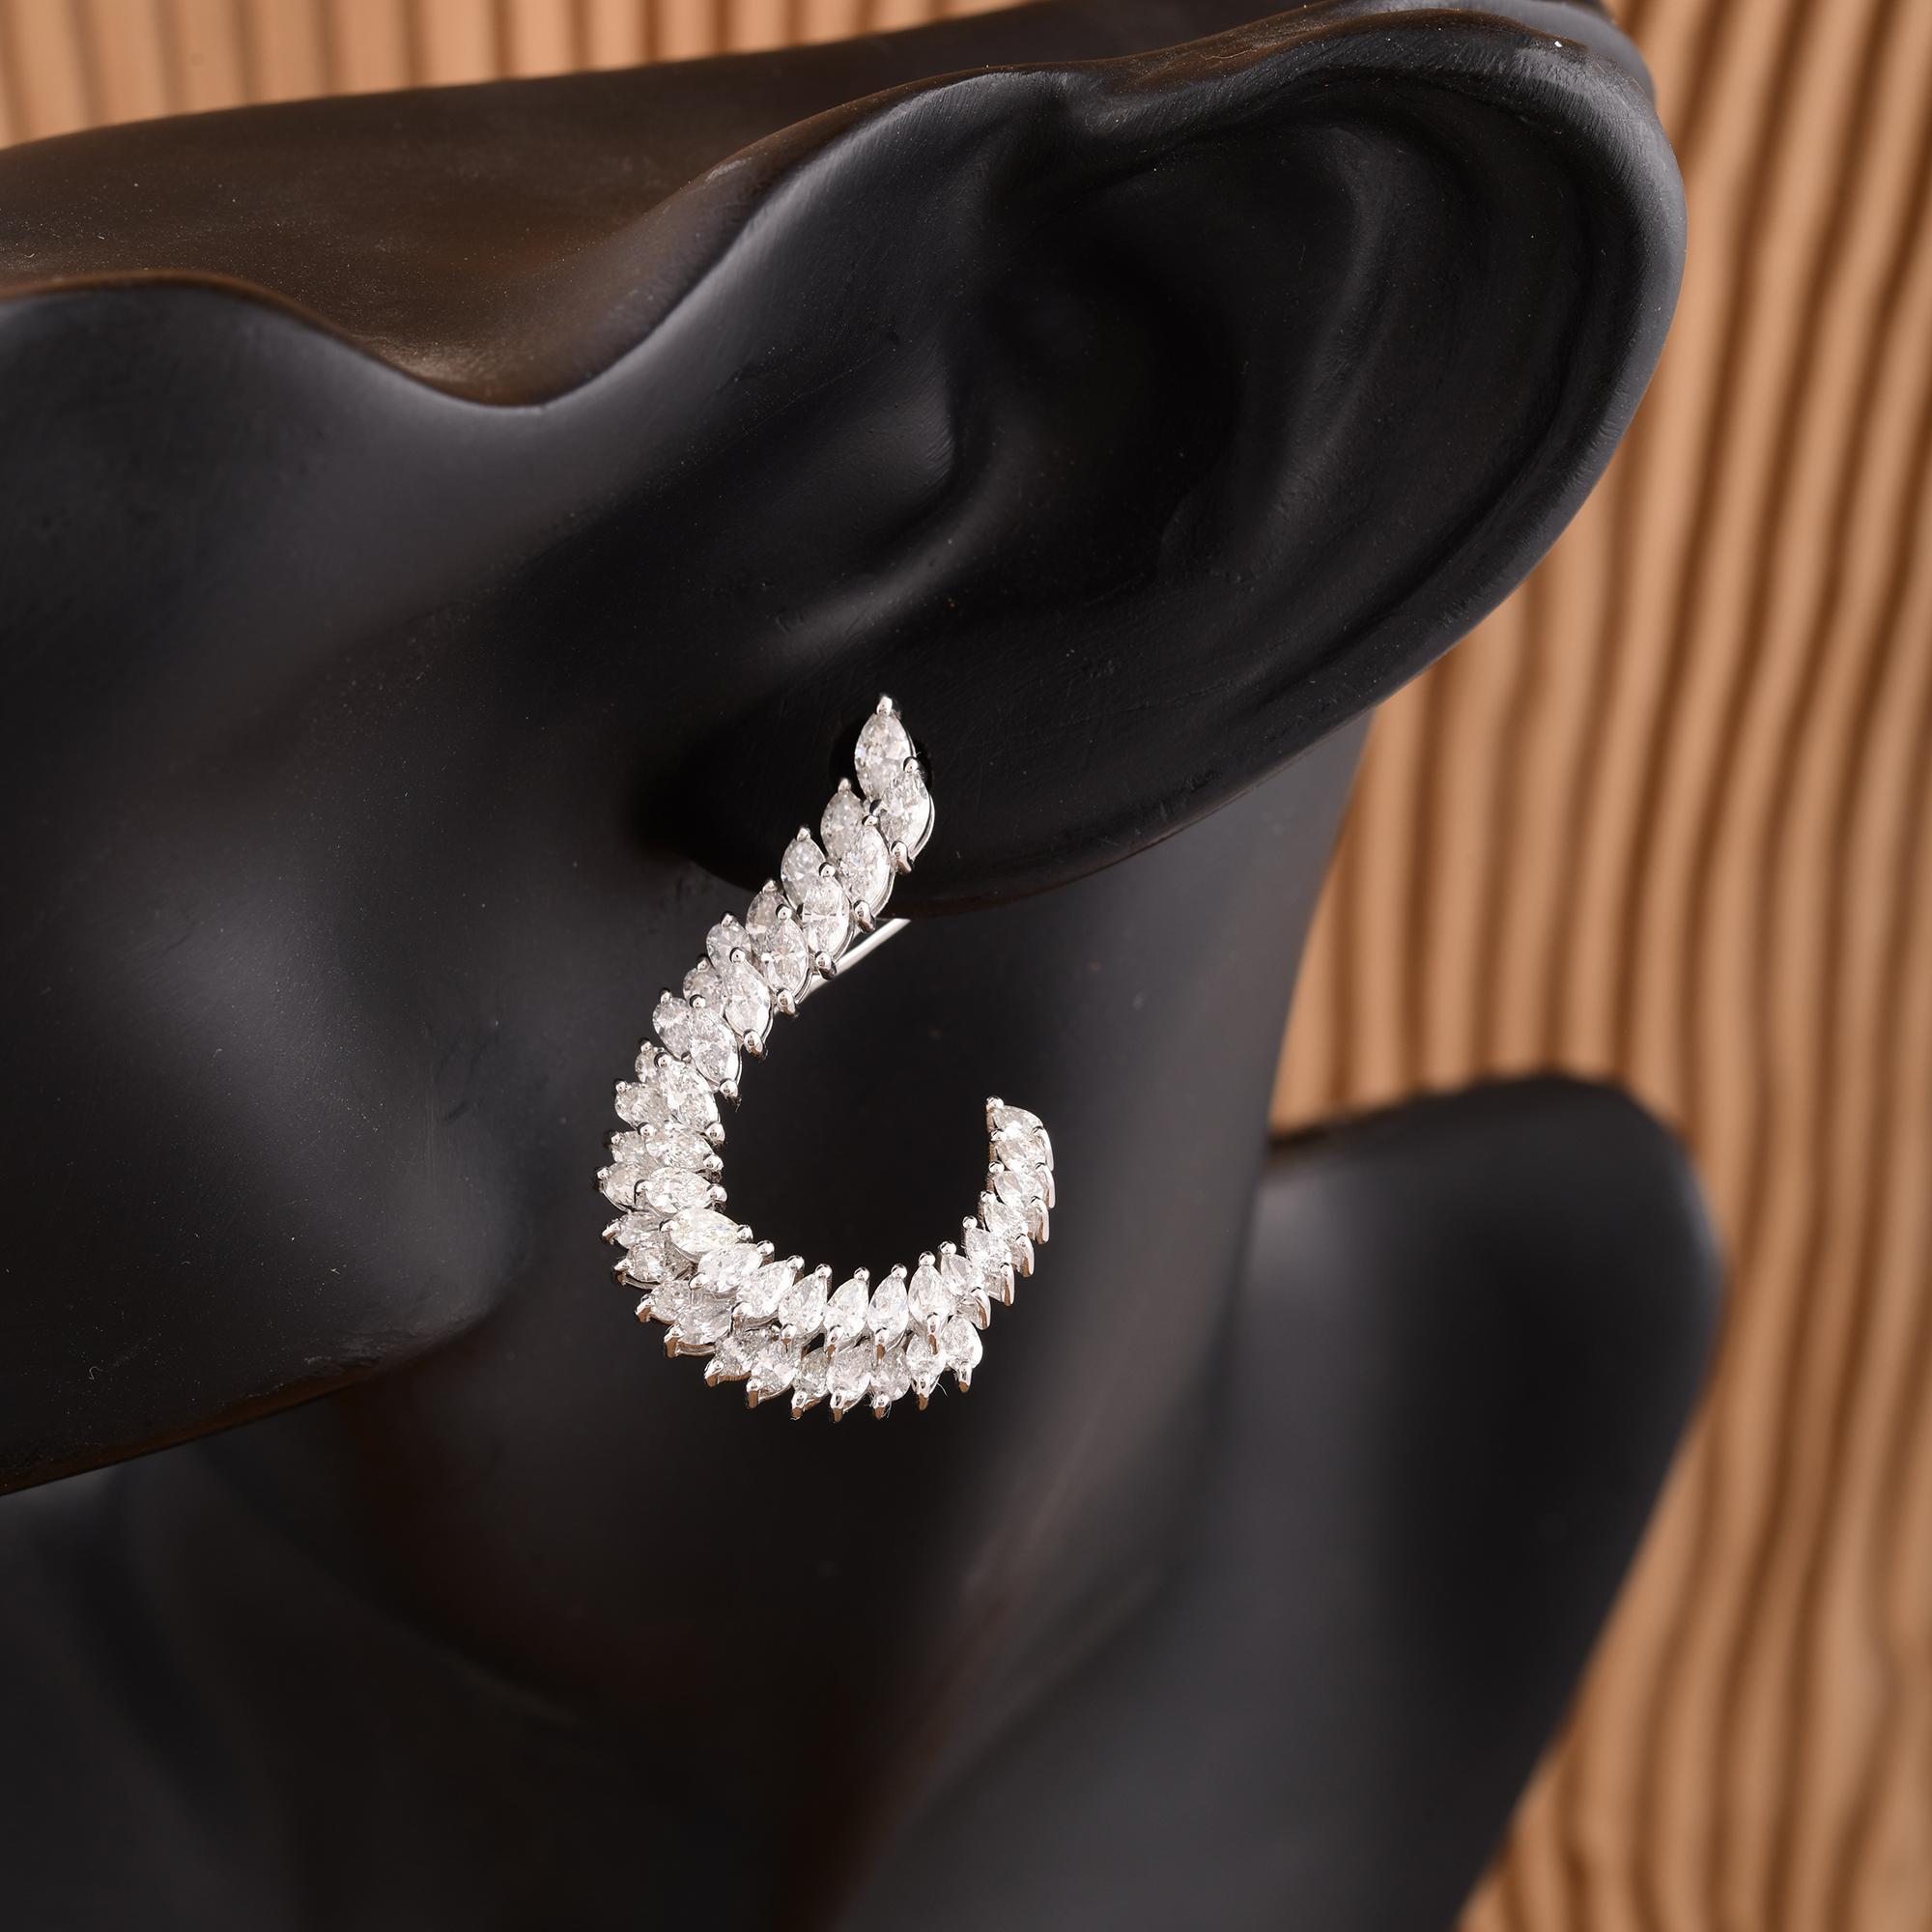 Jeder Ohrring ist mit einem schillernden Diamanten im Birnenschliff besetzt, der für seine charakteristische Tropfenform bekannt ist und Anmut und Raffinesse ausstrahlt. Die Diamanten sind von außergewöhnlicher Klarheit und sorgen für ein